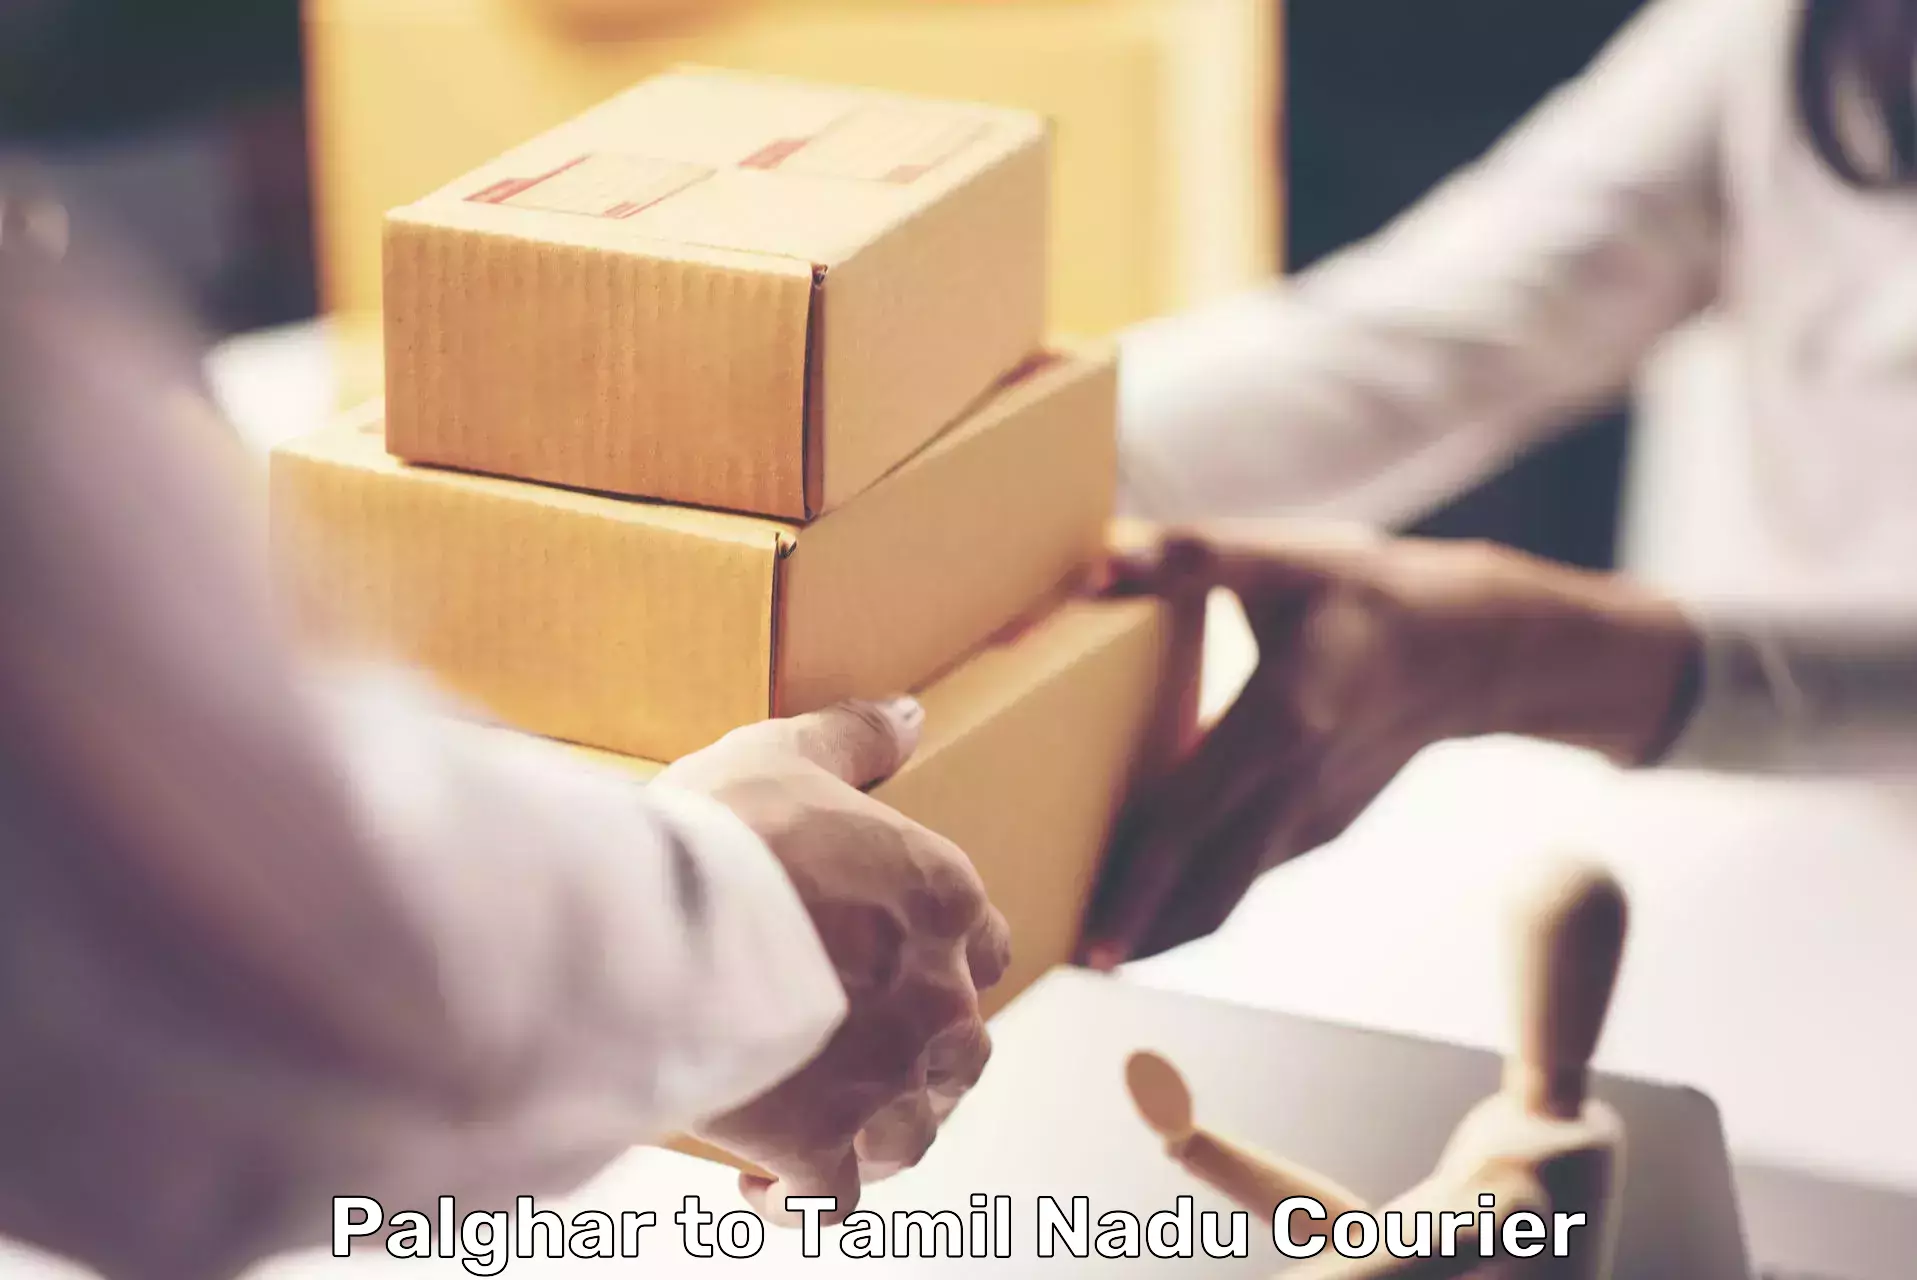 High-capacity parcel service Palghar to Katpadi